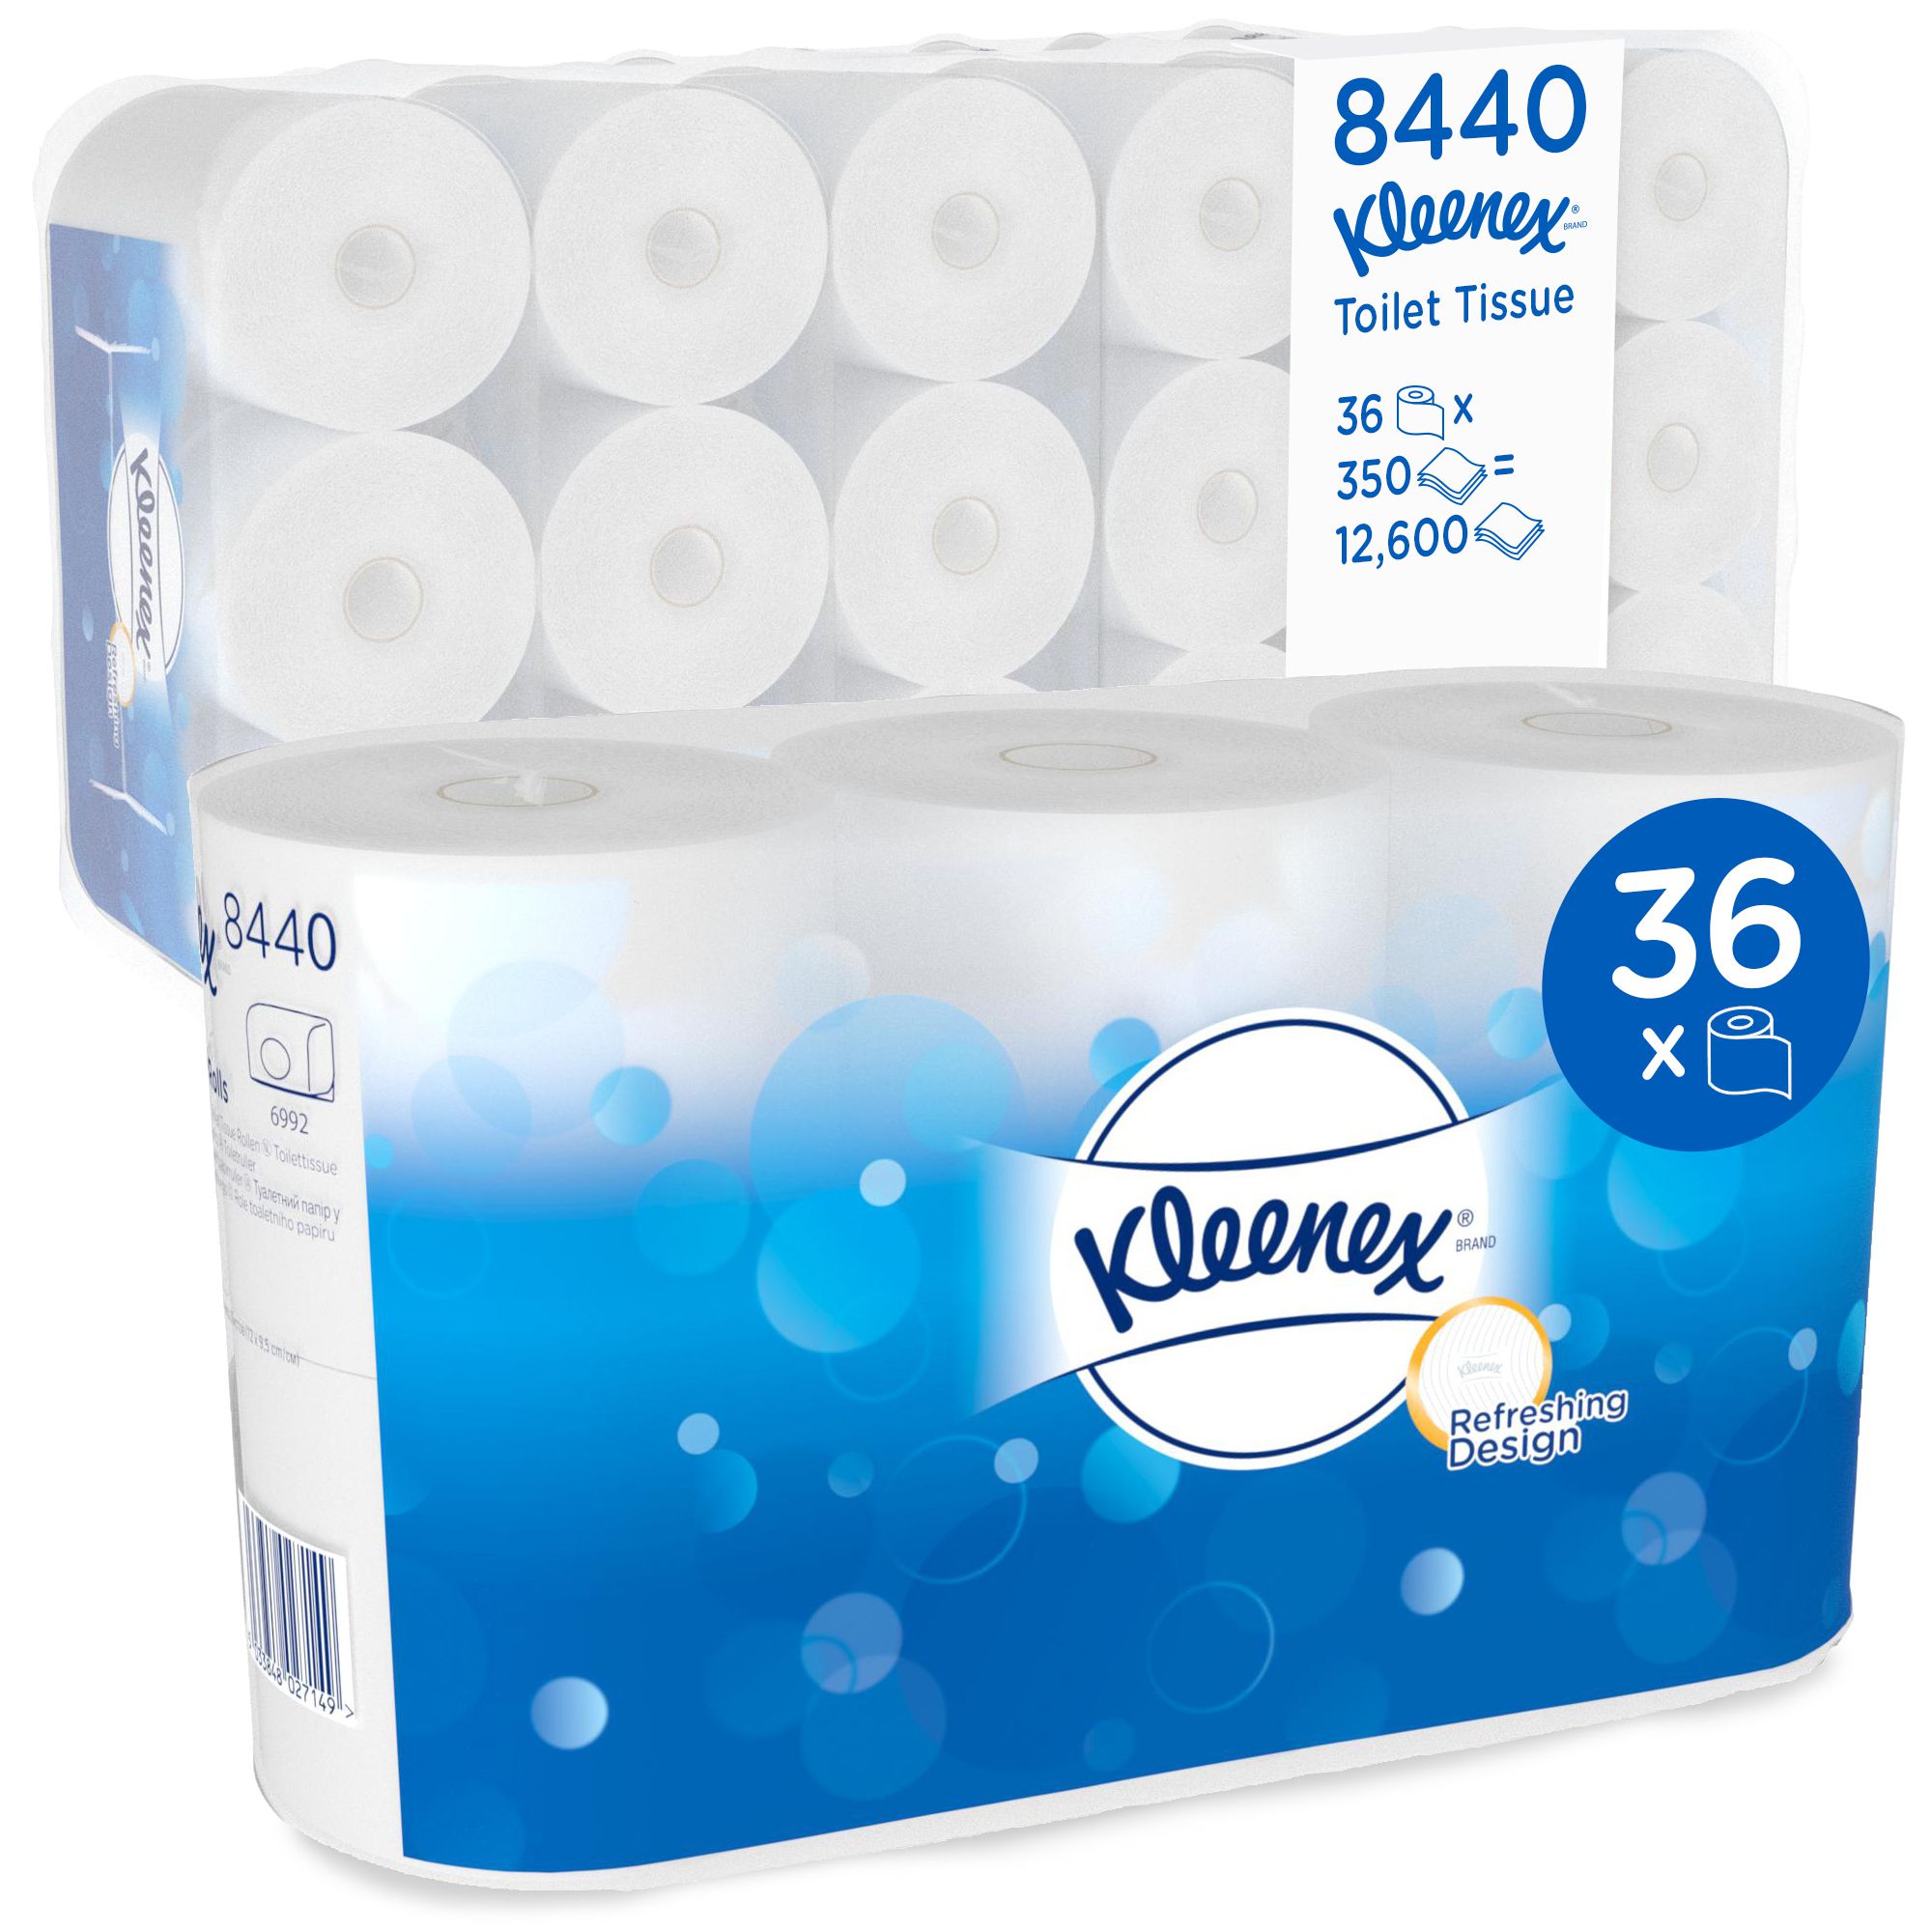 8440 Туалетная бумага в стандартных рулонах Kleenex 350 премиум-класса с логотипом - 36 рулонов по 42 метра